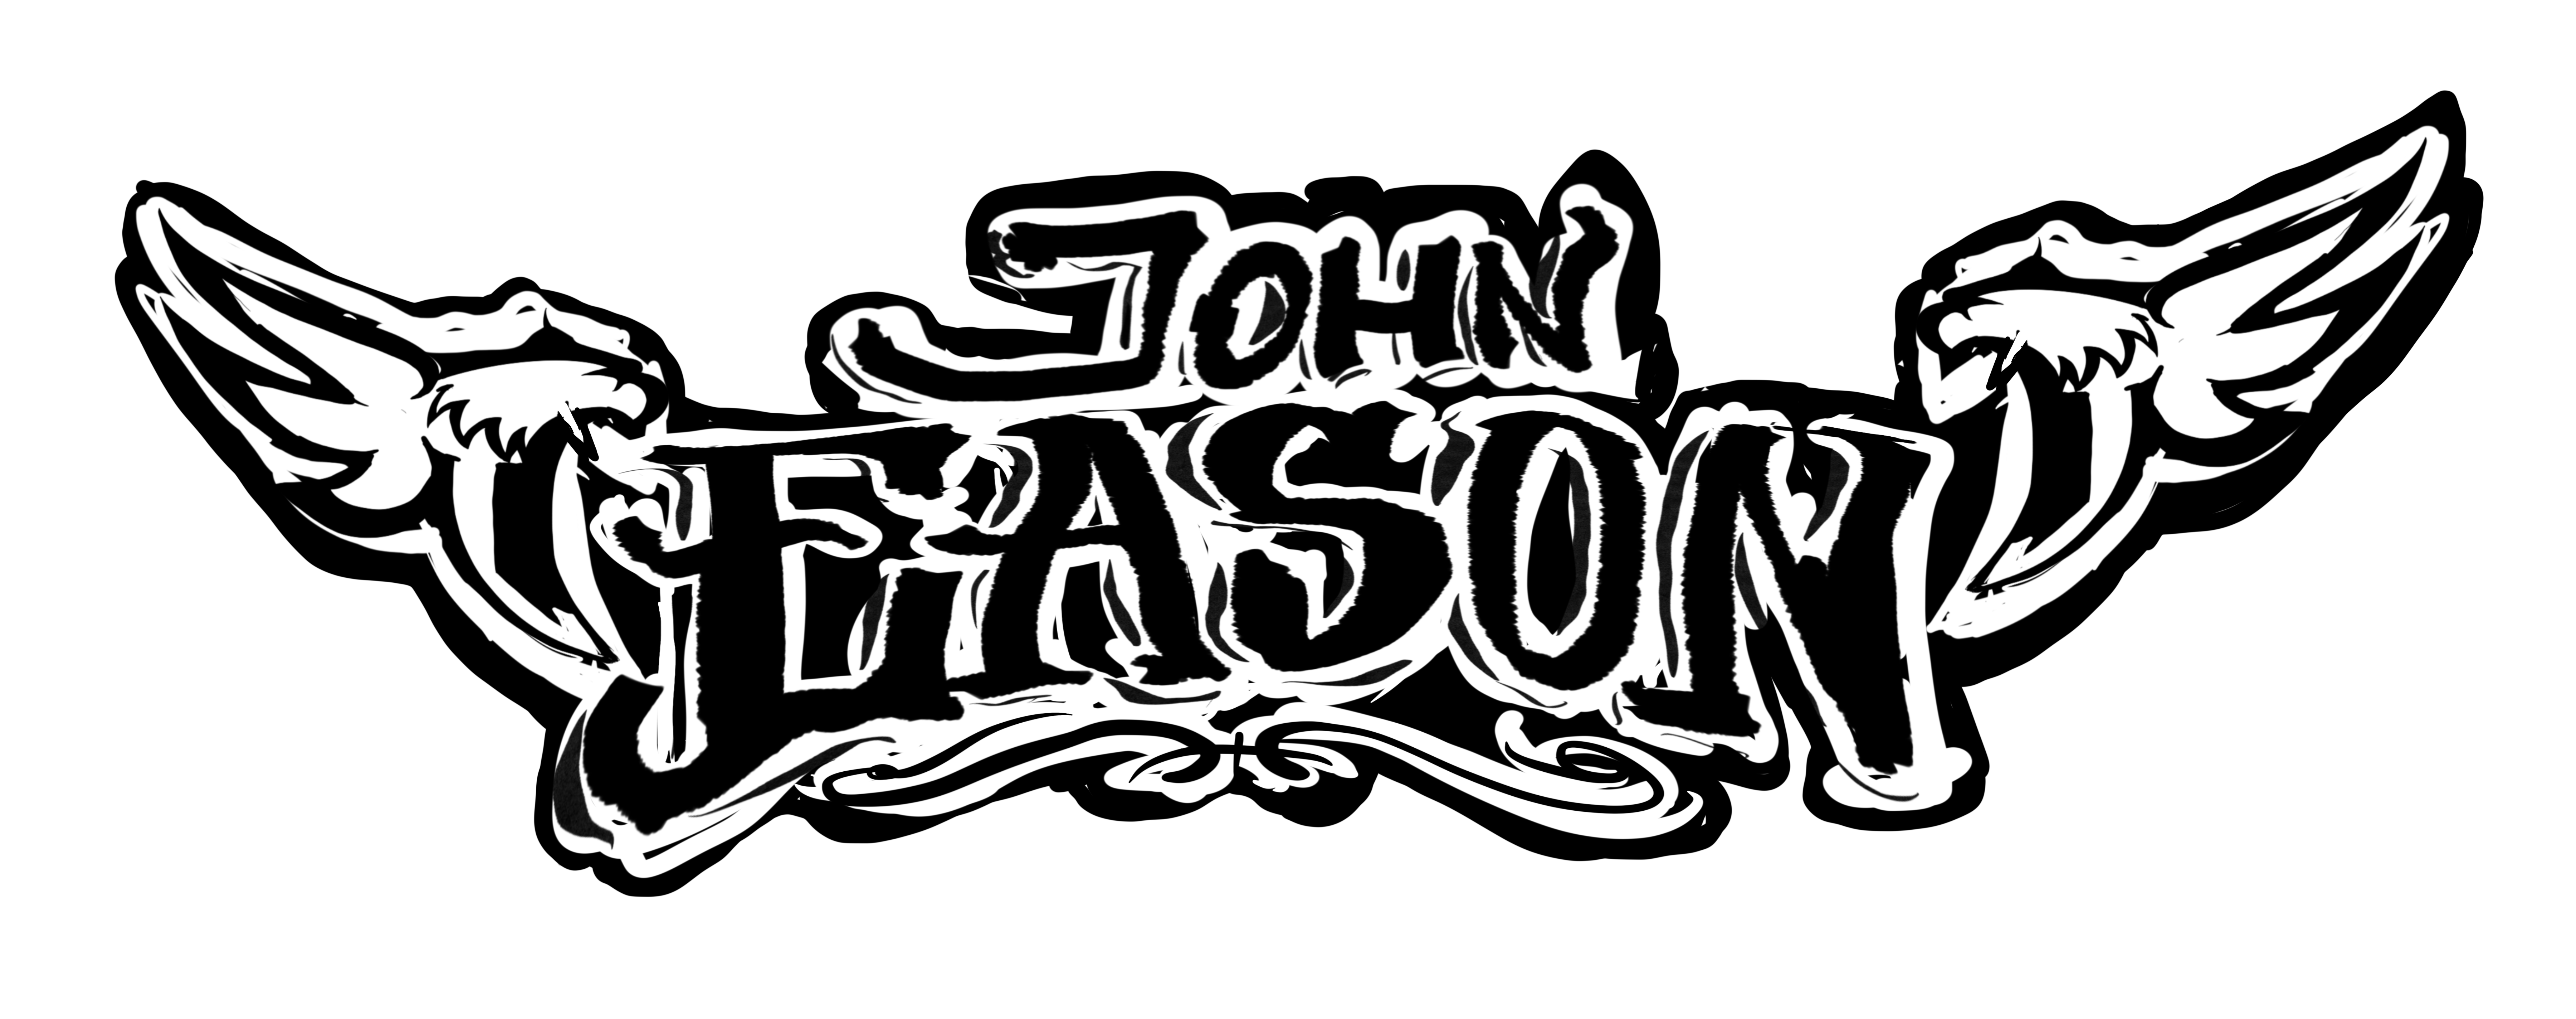 John Eason